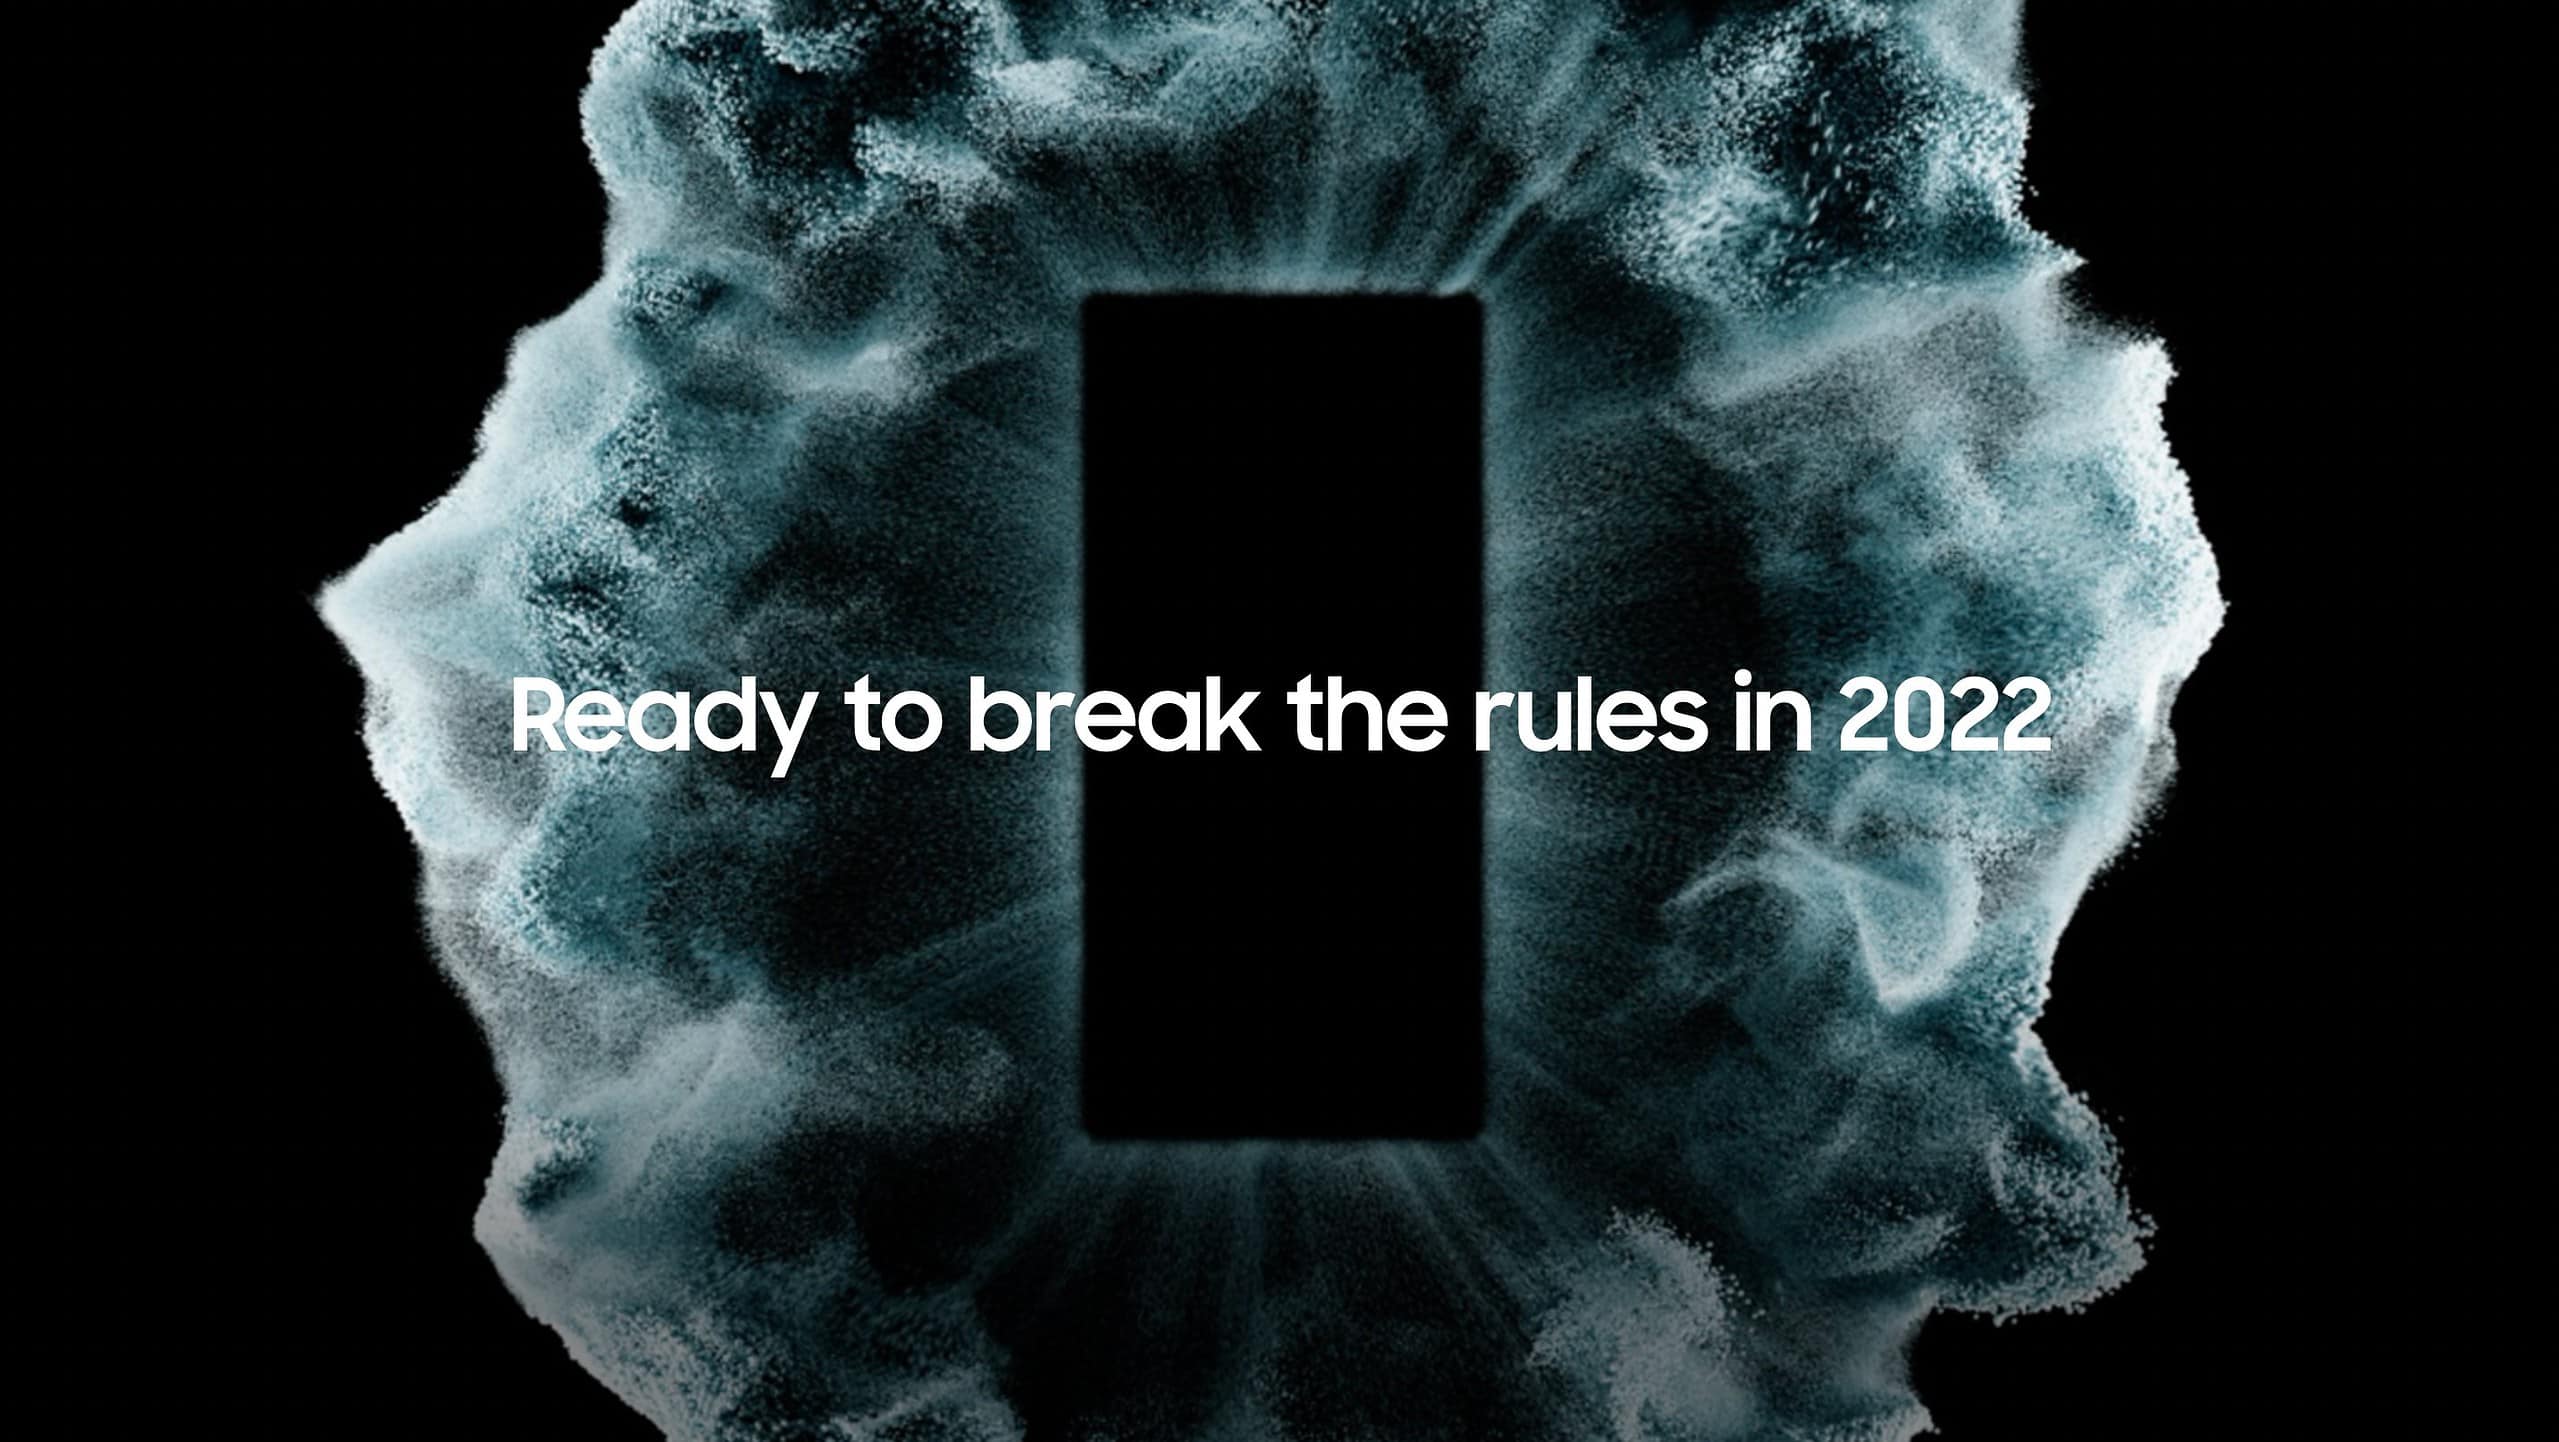 Confirmé: les séries Galaxy S22 et Tab S8 seront lancées le 9 février